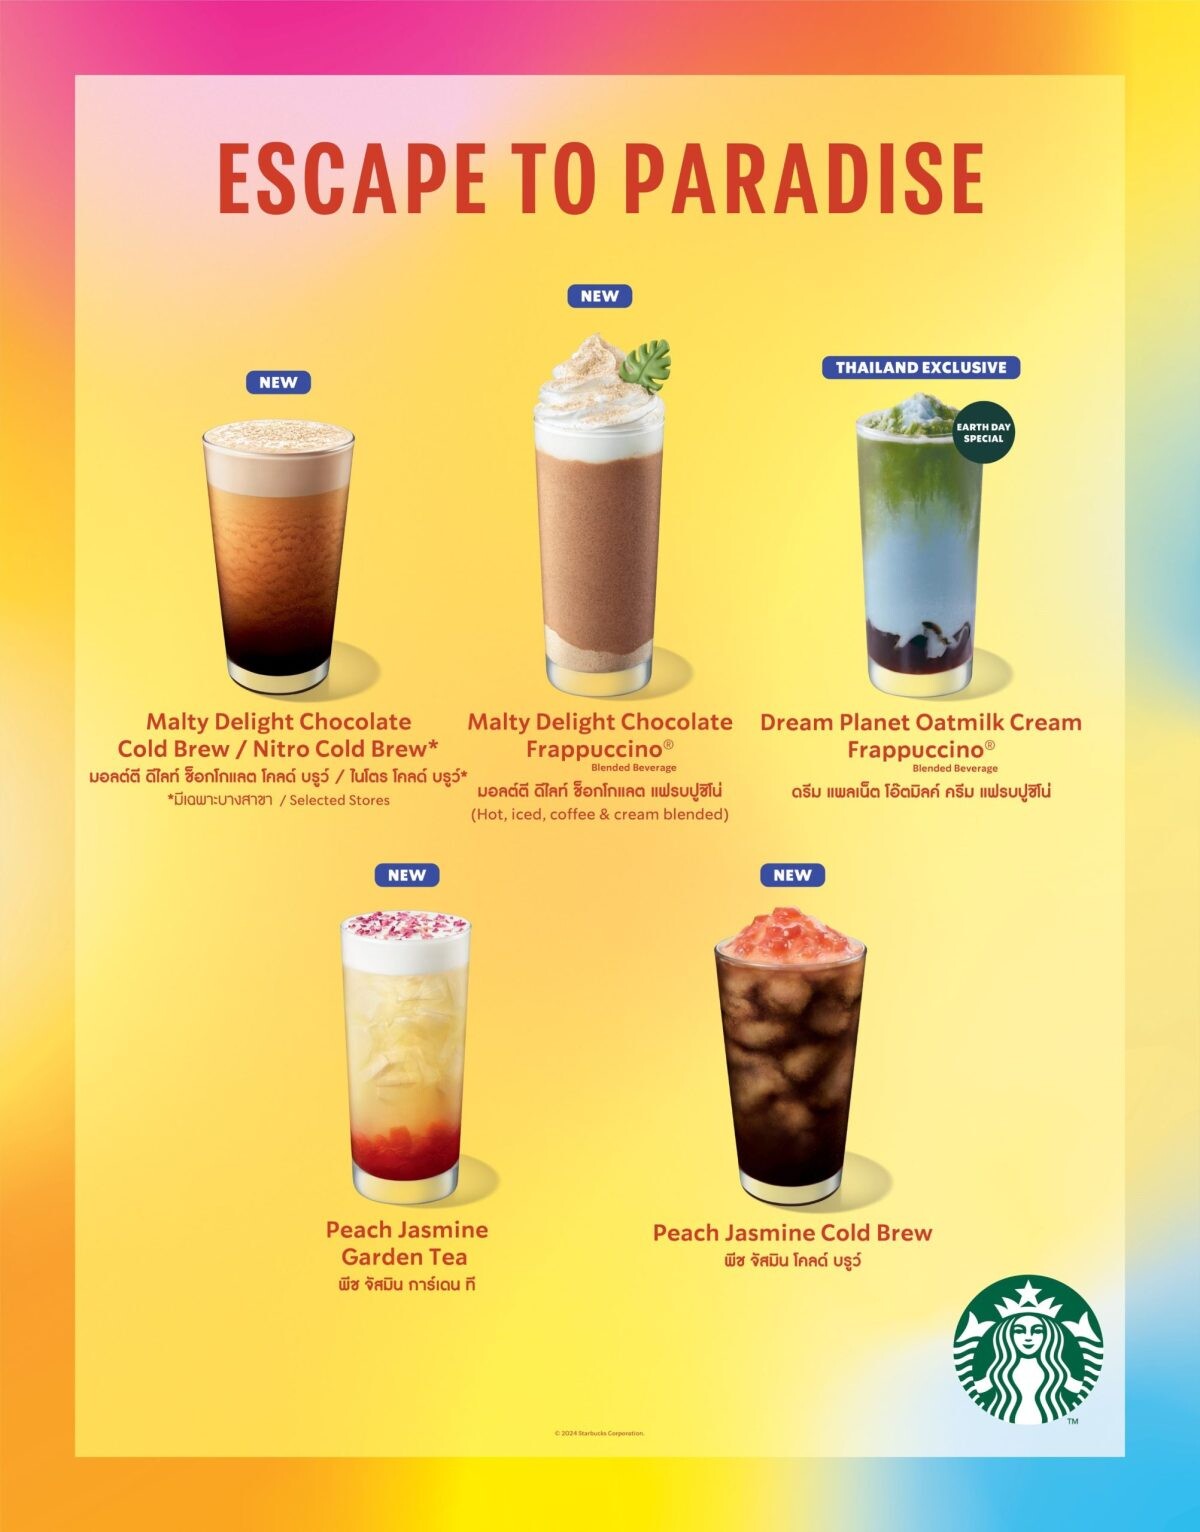 สตาร์บัคส์ ต้อนรับ Earth Month ด้วย "Dream Planet Oatmilk Cream Frappuccino(R)" เอ็กซ์คลูซีฟเฉพาะประเทศไทยเท่านั้น พร้อมเครื่องดื่มหลากหลายคลายร้อน